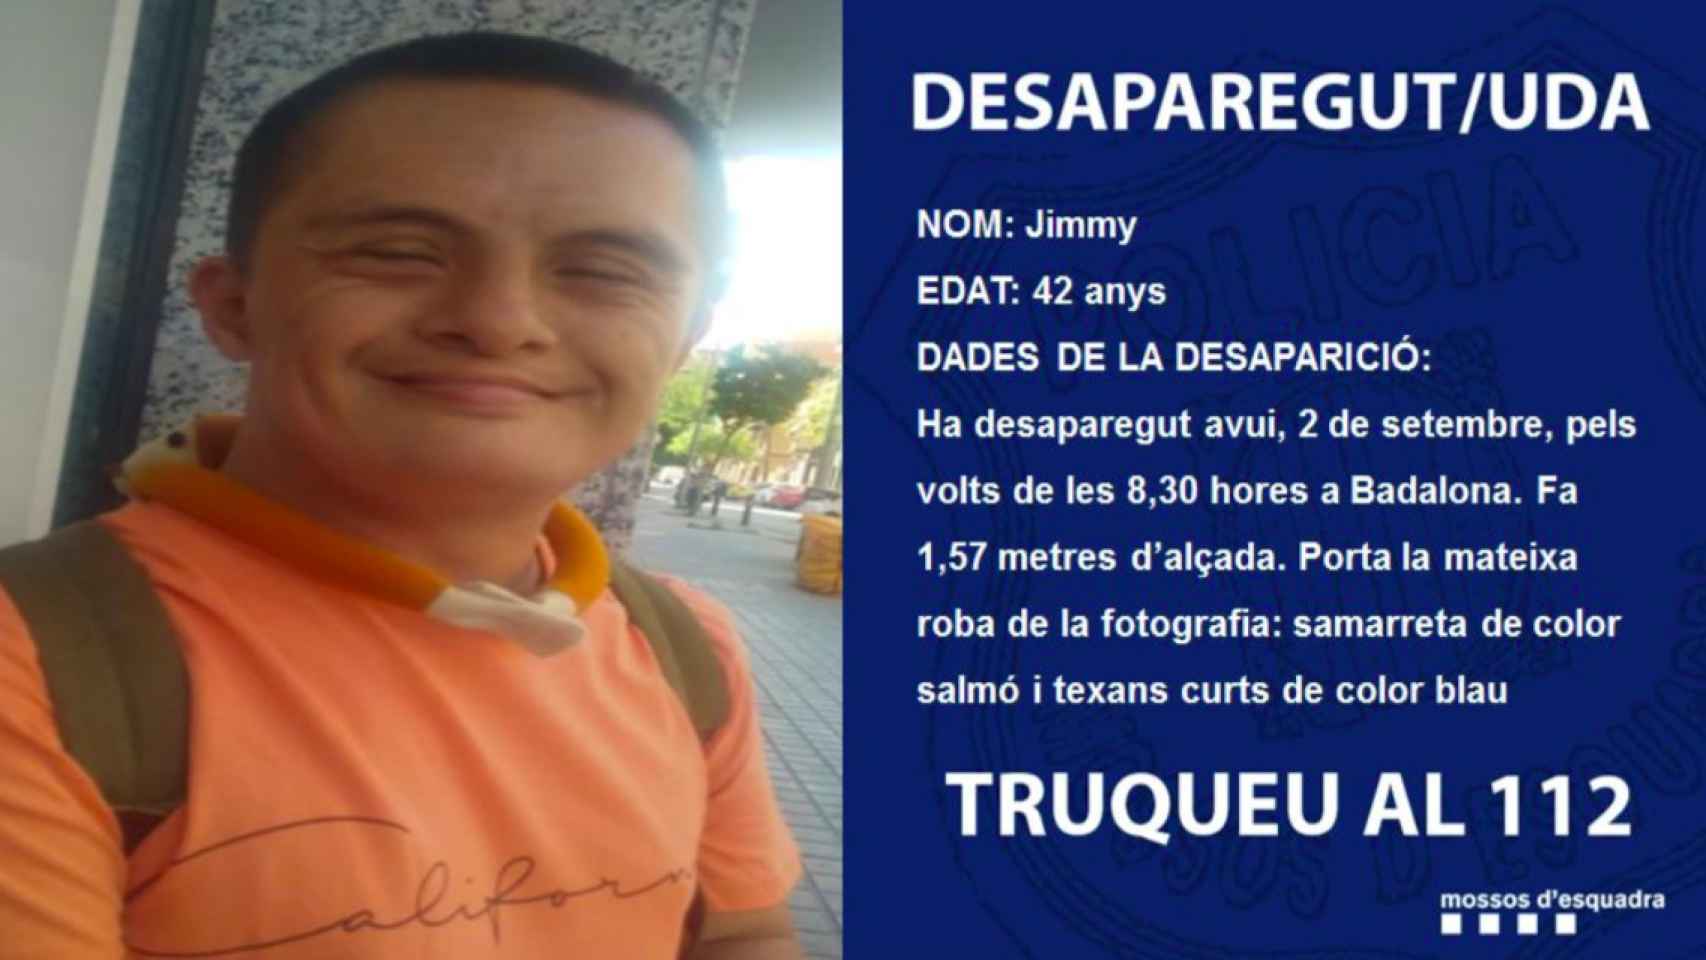 Imagen difundida a través de Twitter de Jimmy, el hombre de 42 años desaparecido en Badalona / @mossos